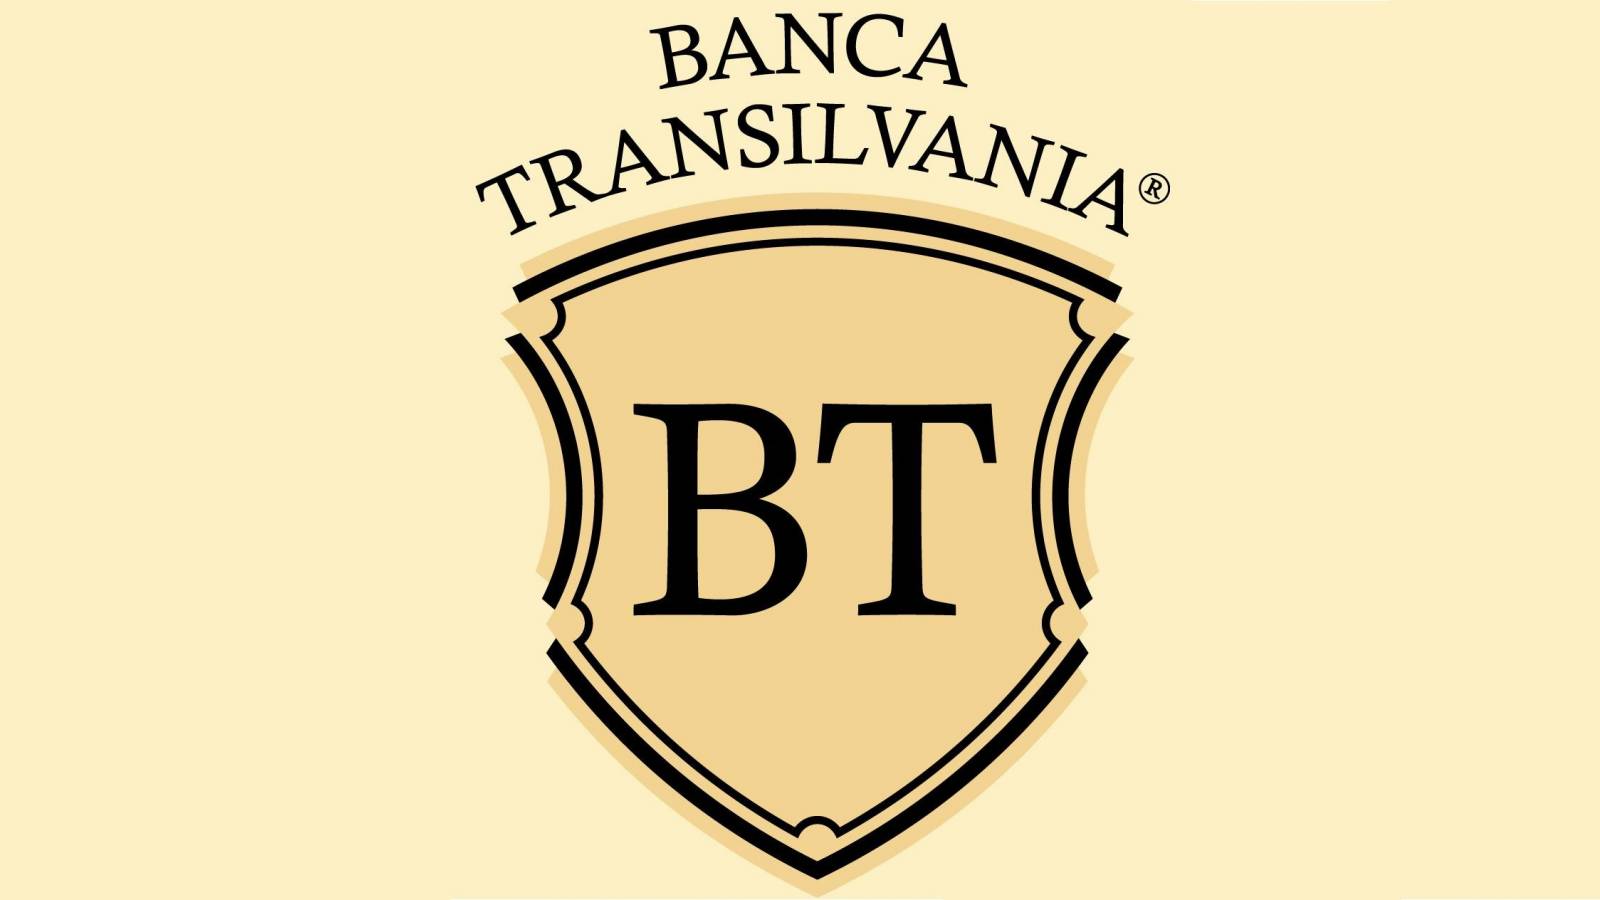 BANCA Transilvania 3 OFFICIELLA VARNINGAR FÖR SISTA MINUTEN Observera alla rumänska kunder